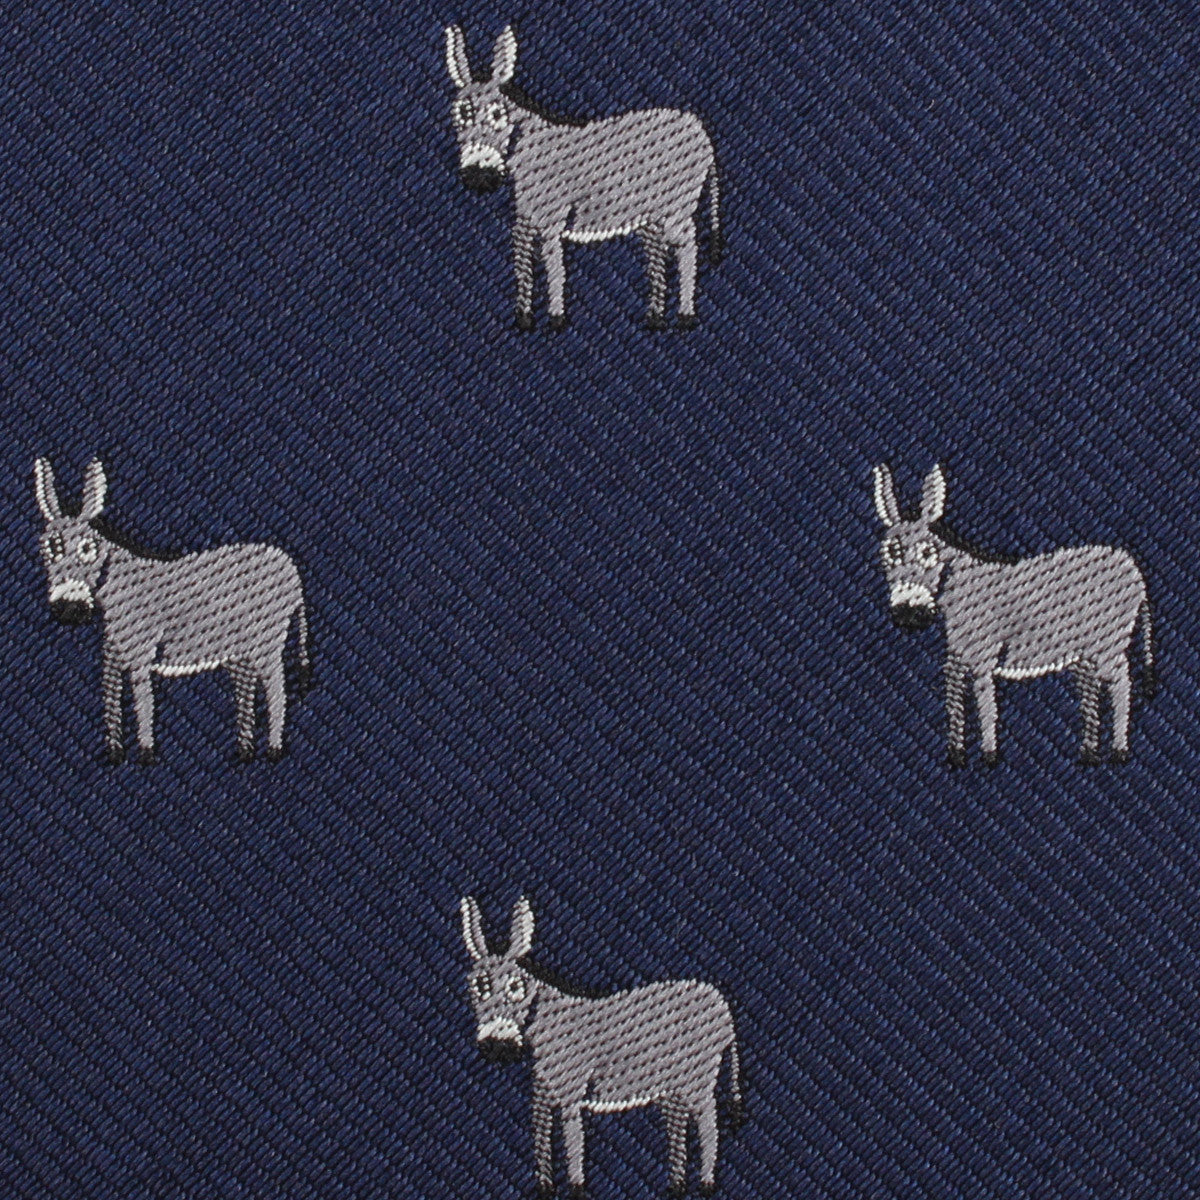 Donkey Fabric Mens Bow Tie